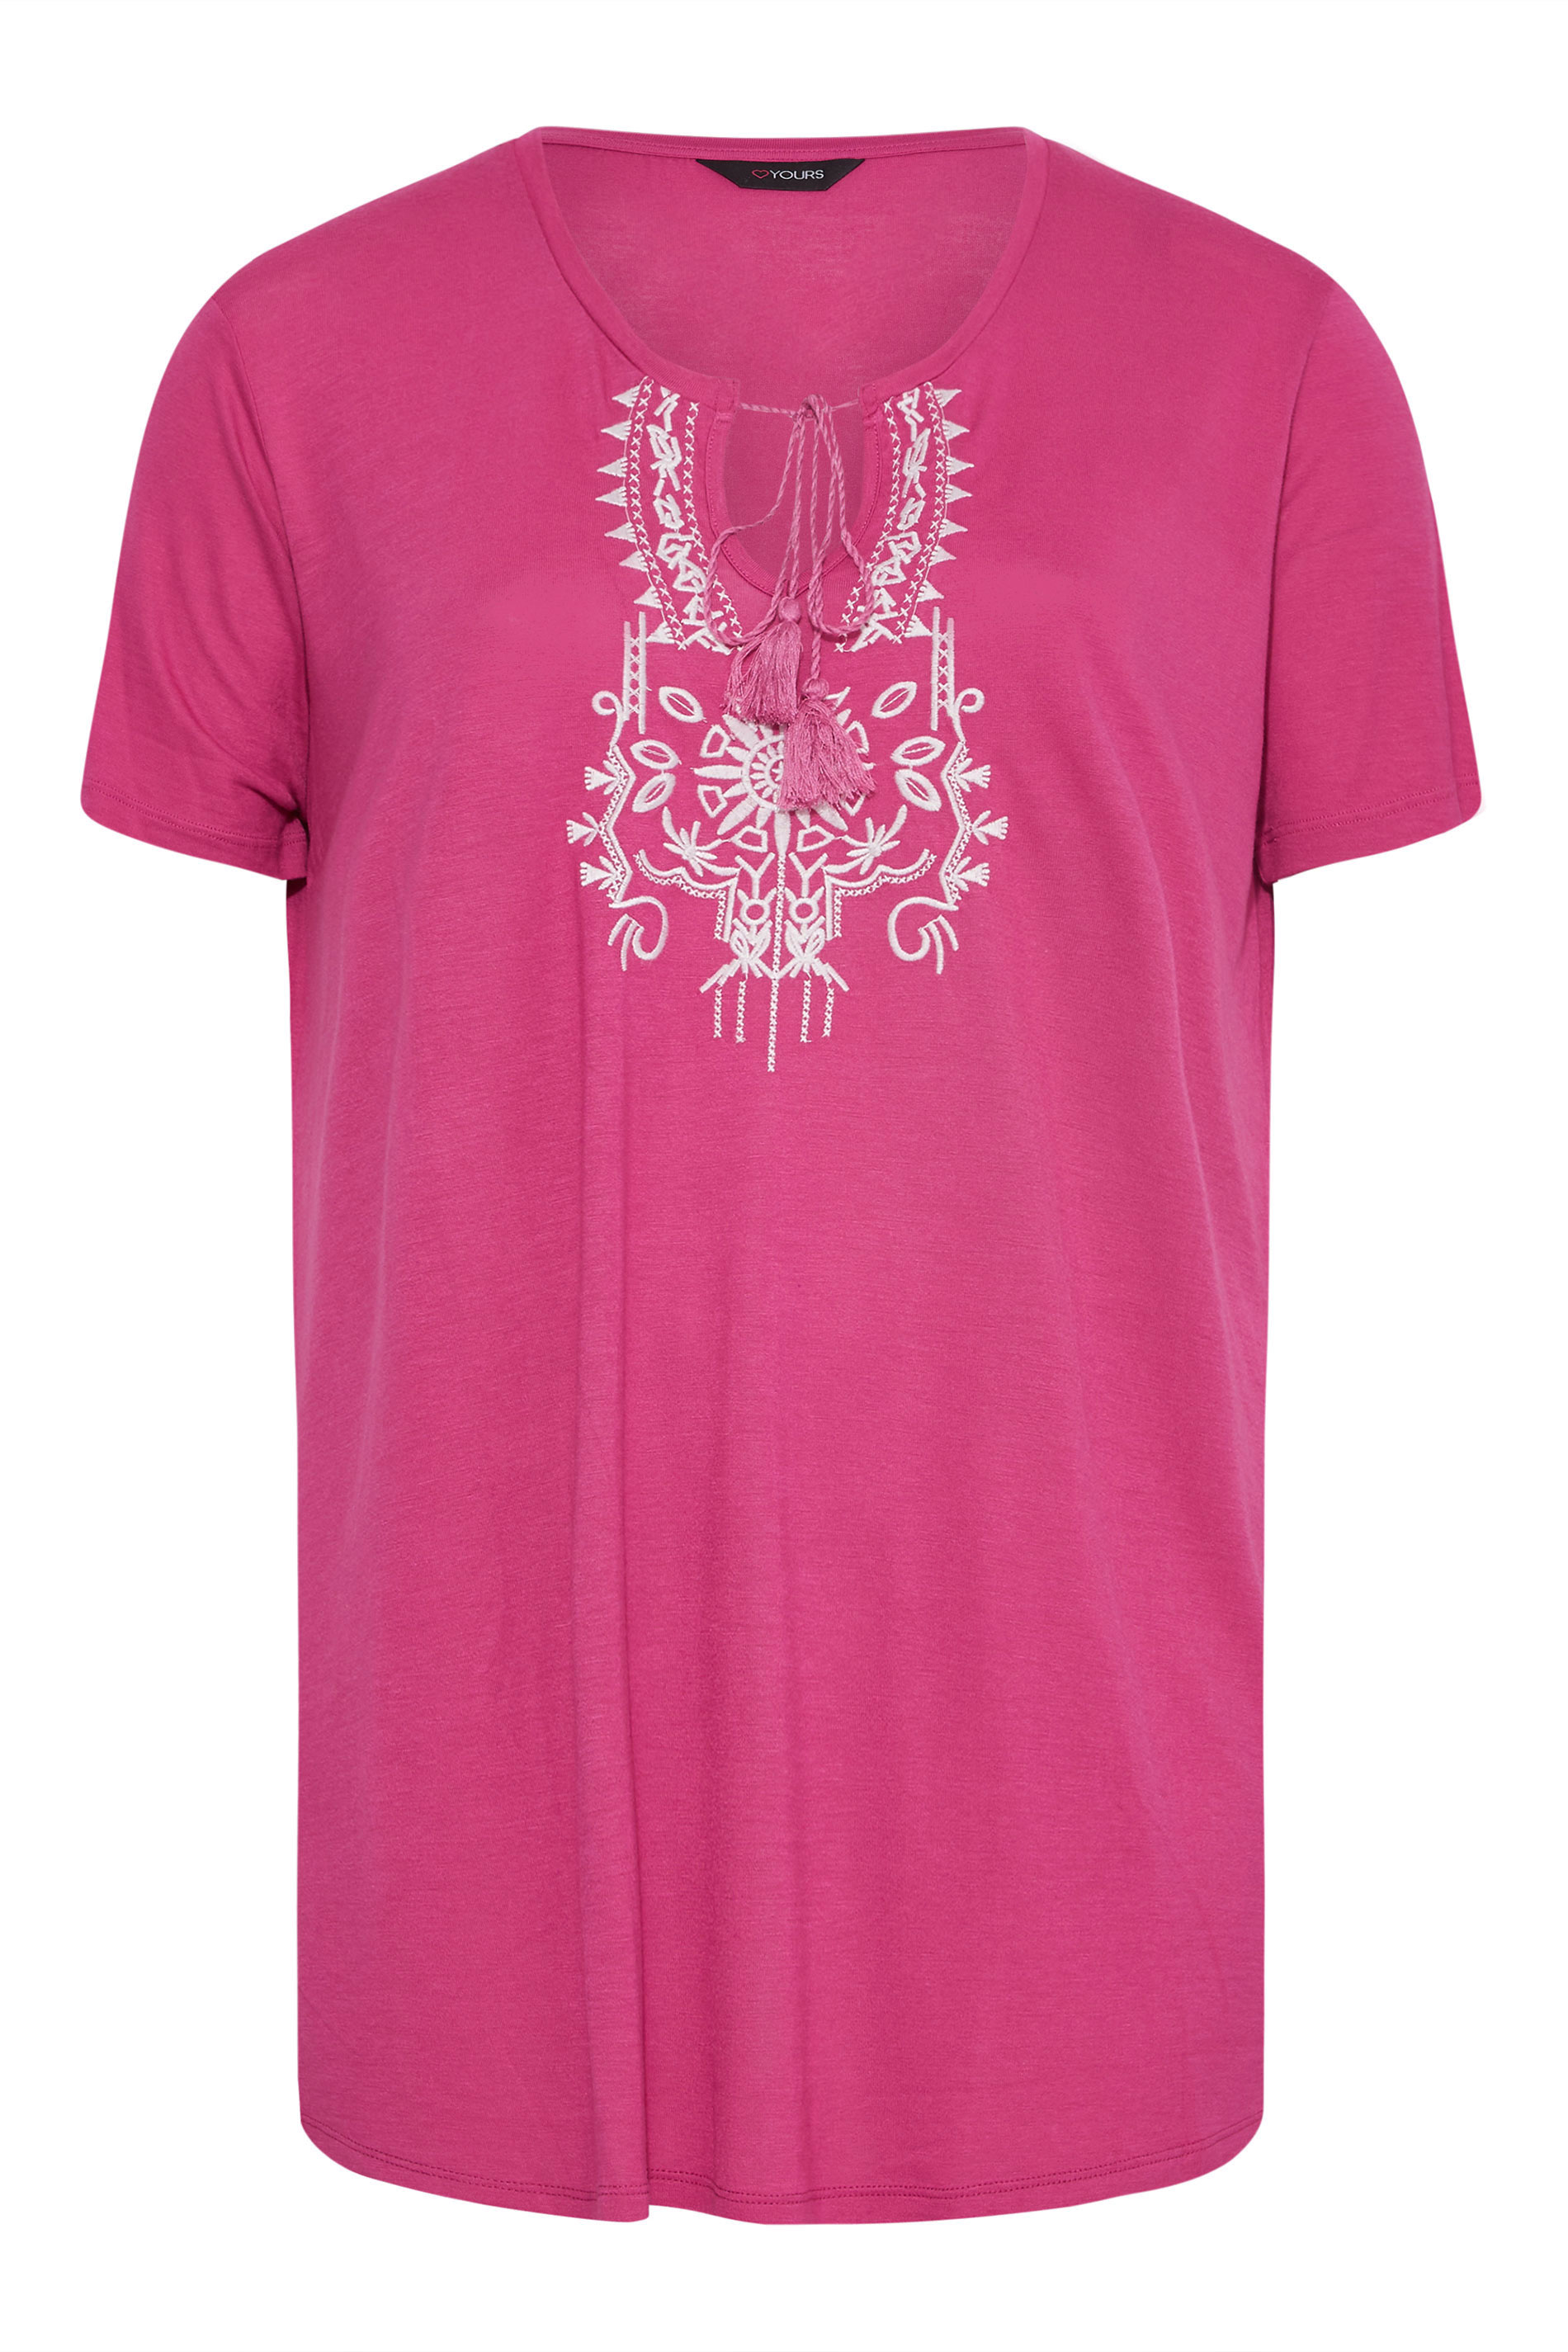 Grande taille  Tops Grande taille  T-Shirts | T-Shirt Rose Brodé Aztèque à Ficelle - TP94372